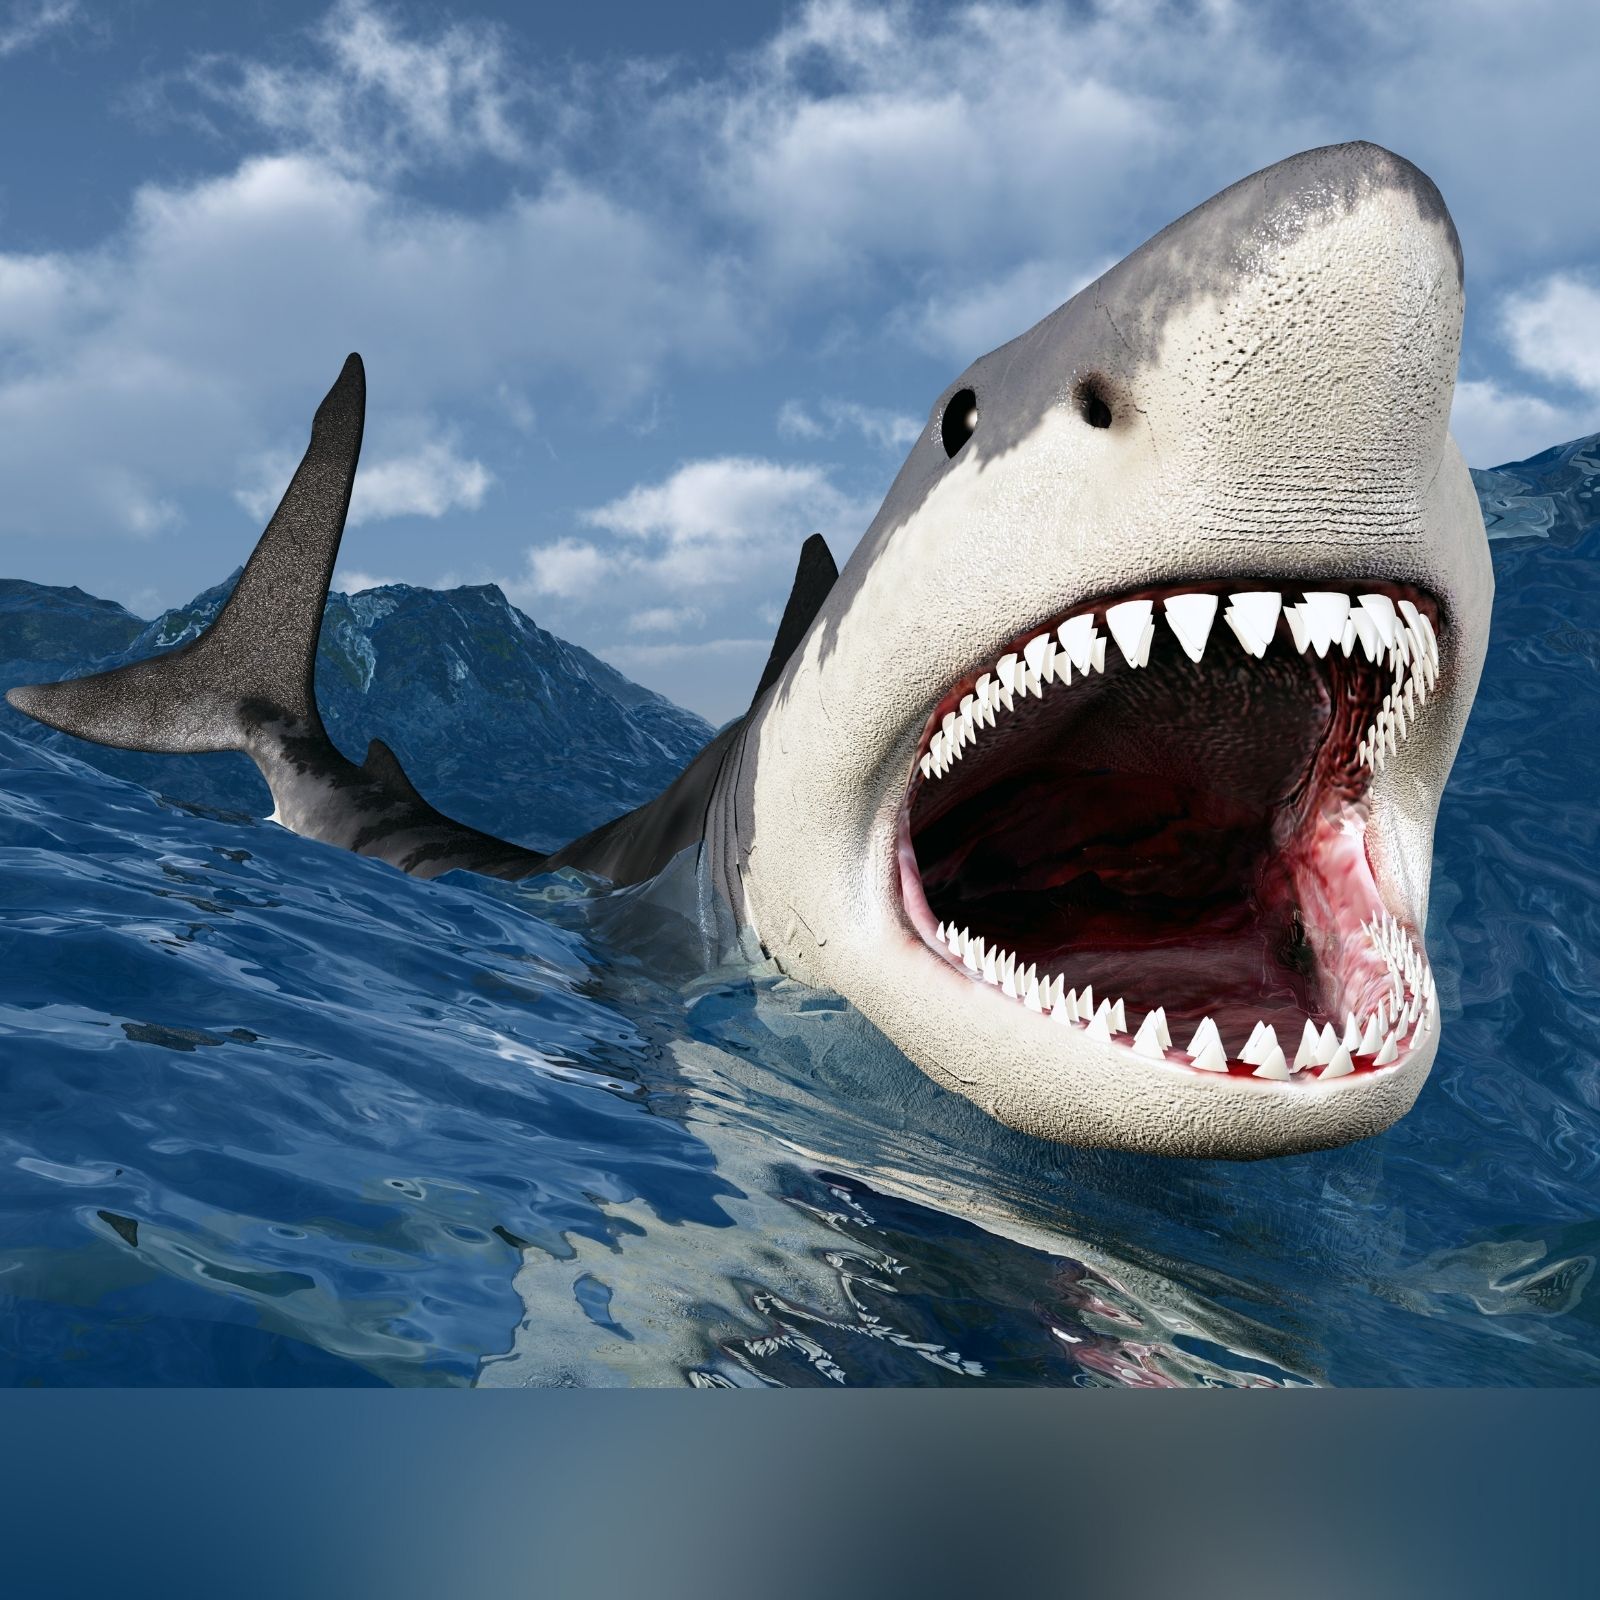 विशाल शार्क के जबड़े में जा फंसा एक तैराक, दो हिस्सों में बांटकर उसे खा गई ' Shark' - swimmer was attacked and eaten by giant white shark in sydney bay  in australia